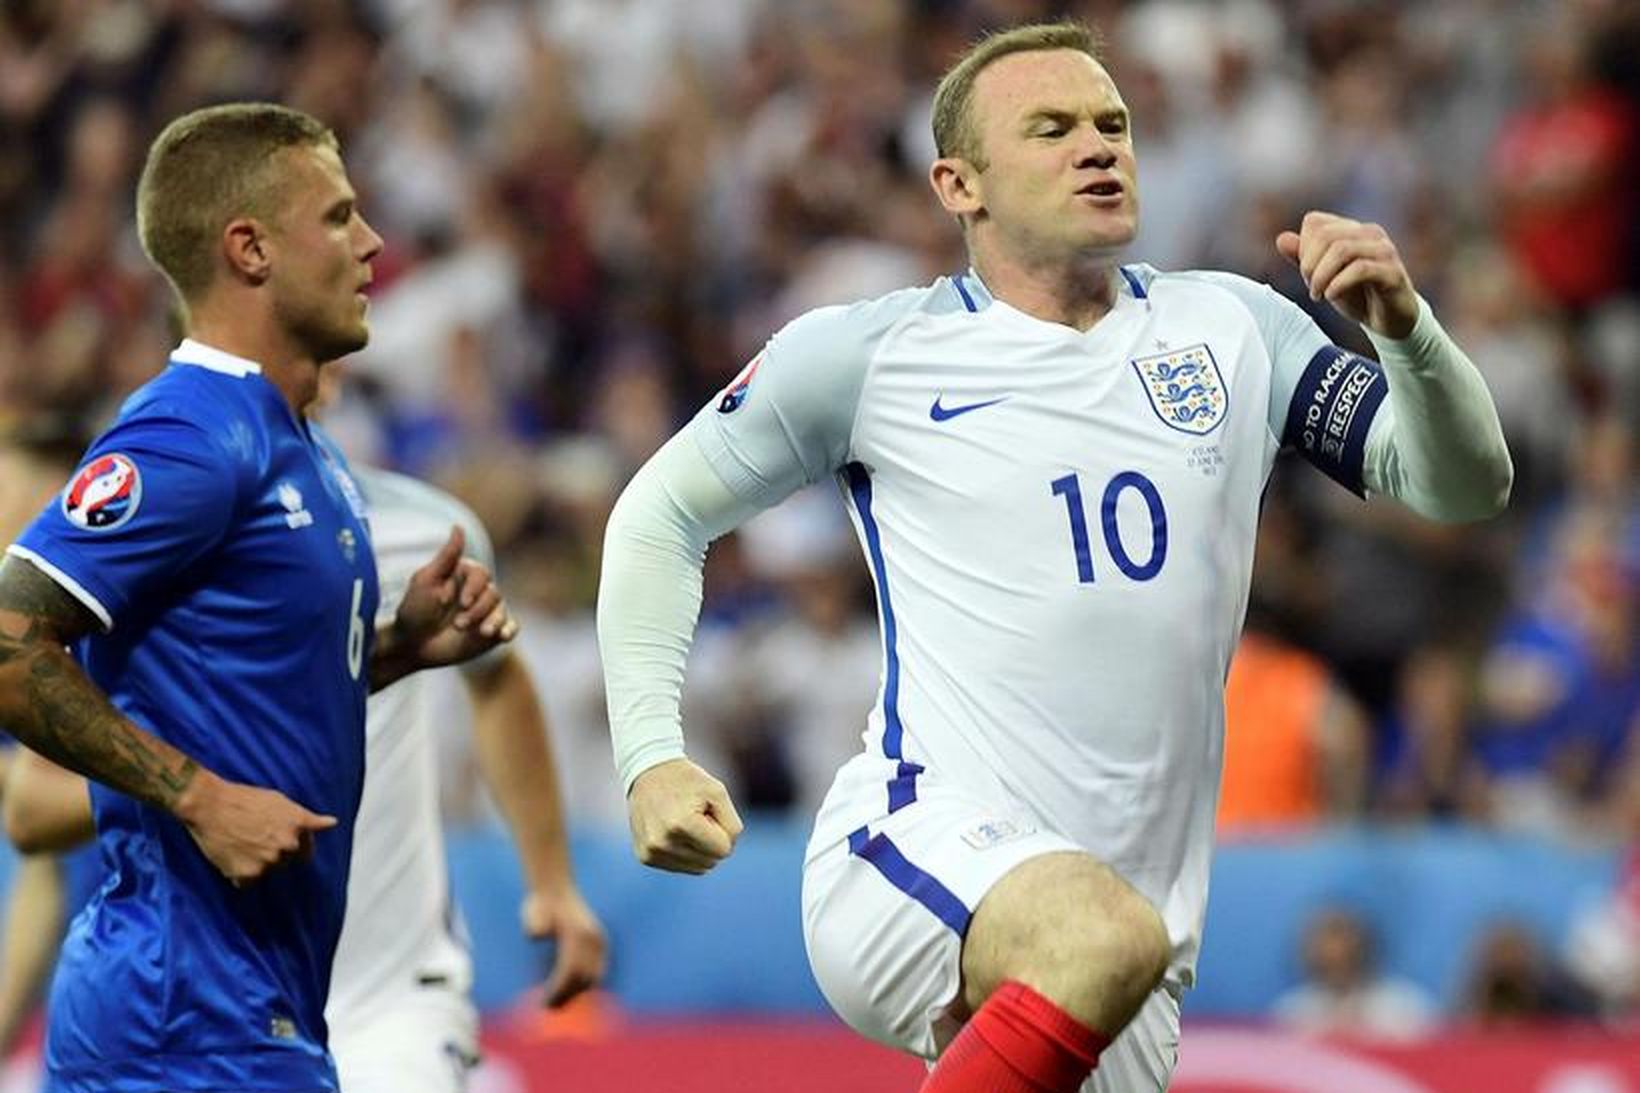 Rooney fagnar marki sínu gegn Íslendingum í gærkvöld.